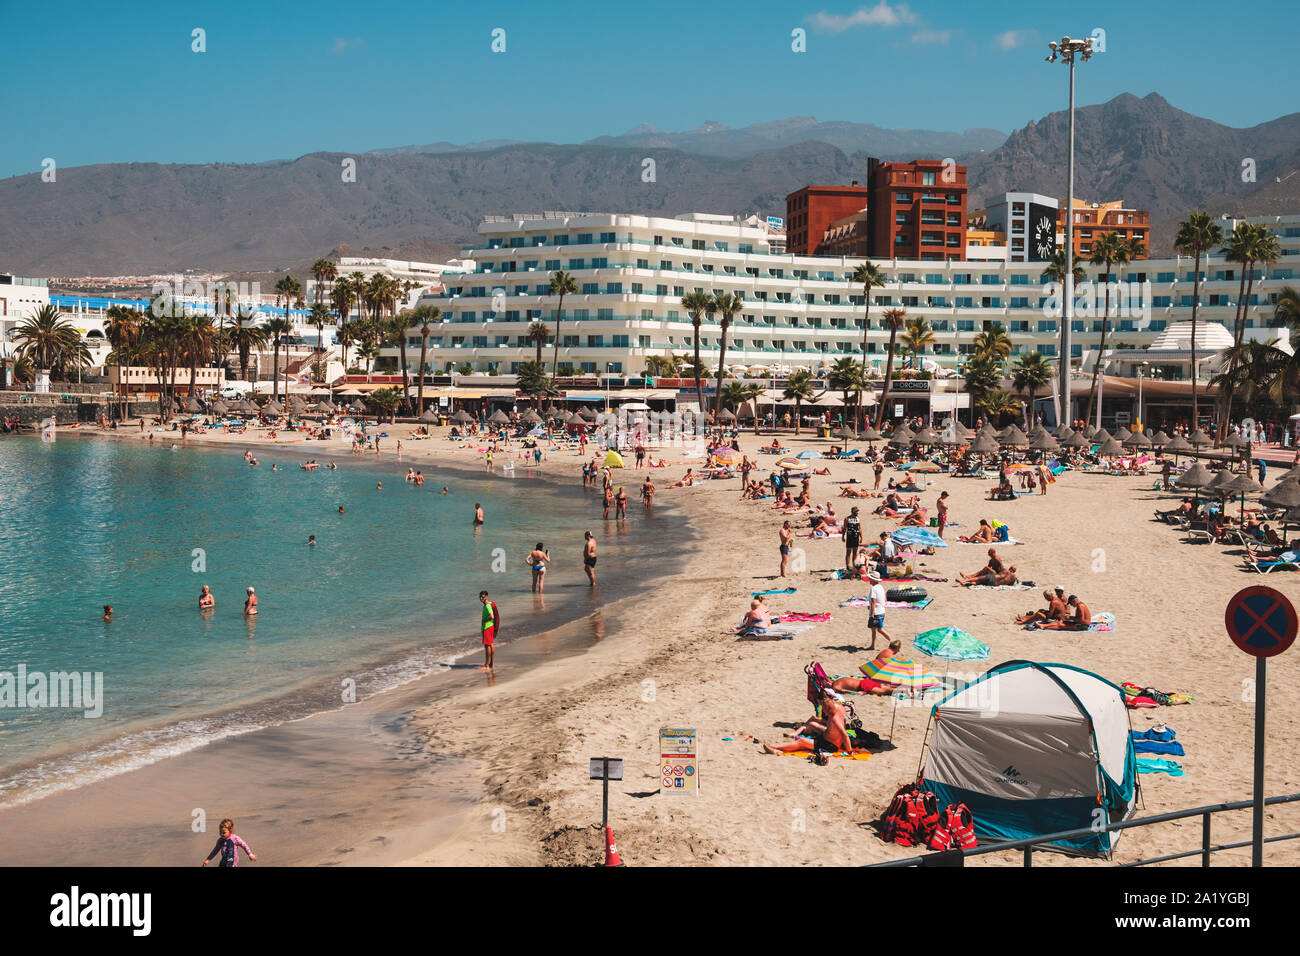 Tenerife, Espagne - Août, 2019 : les gens à l'hôtel avec plage bondée en arrière-plan, Costa Adeje, Tenerife, Espagne Banque D'Images